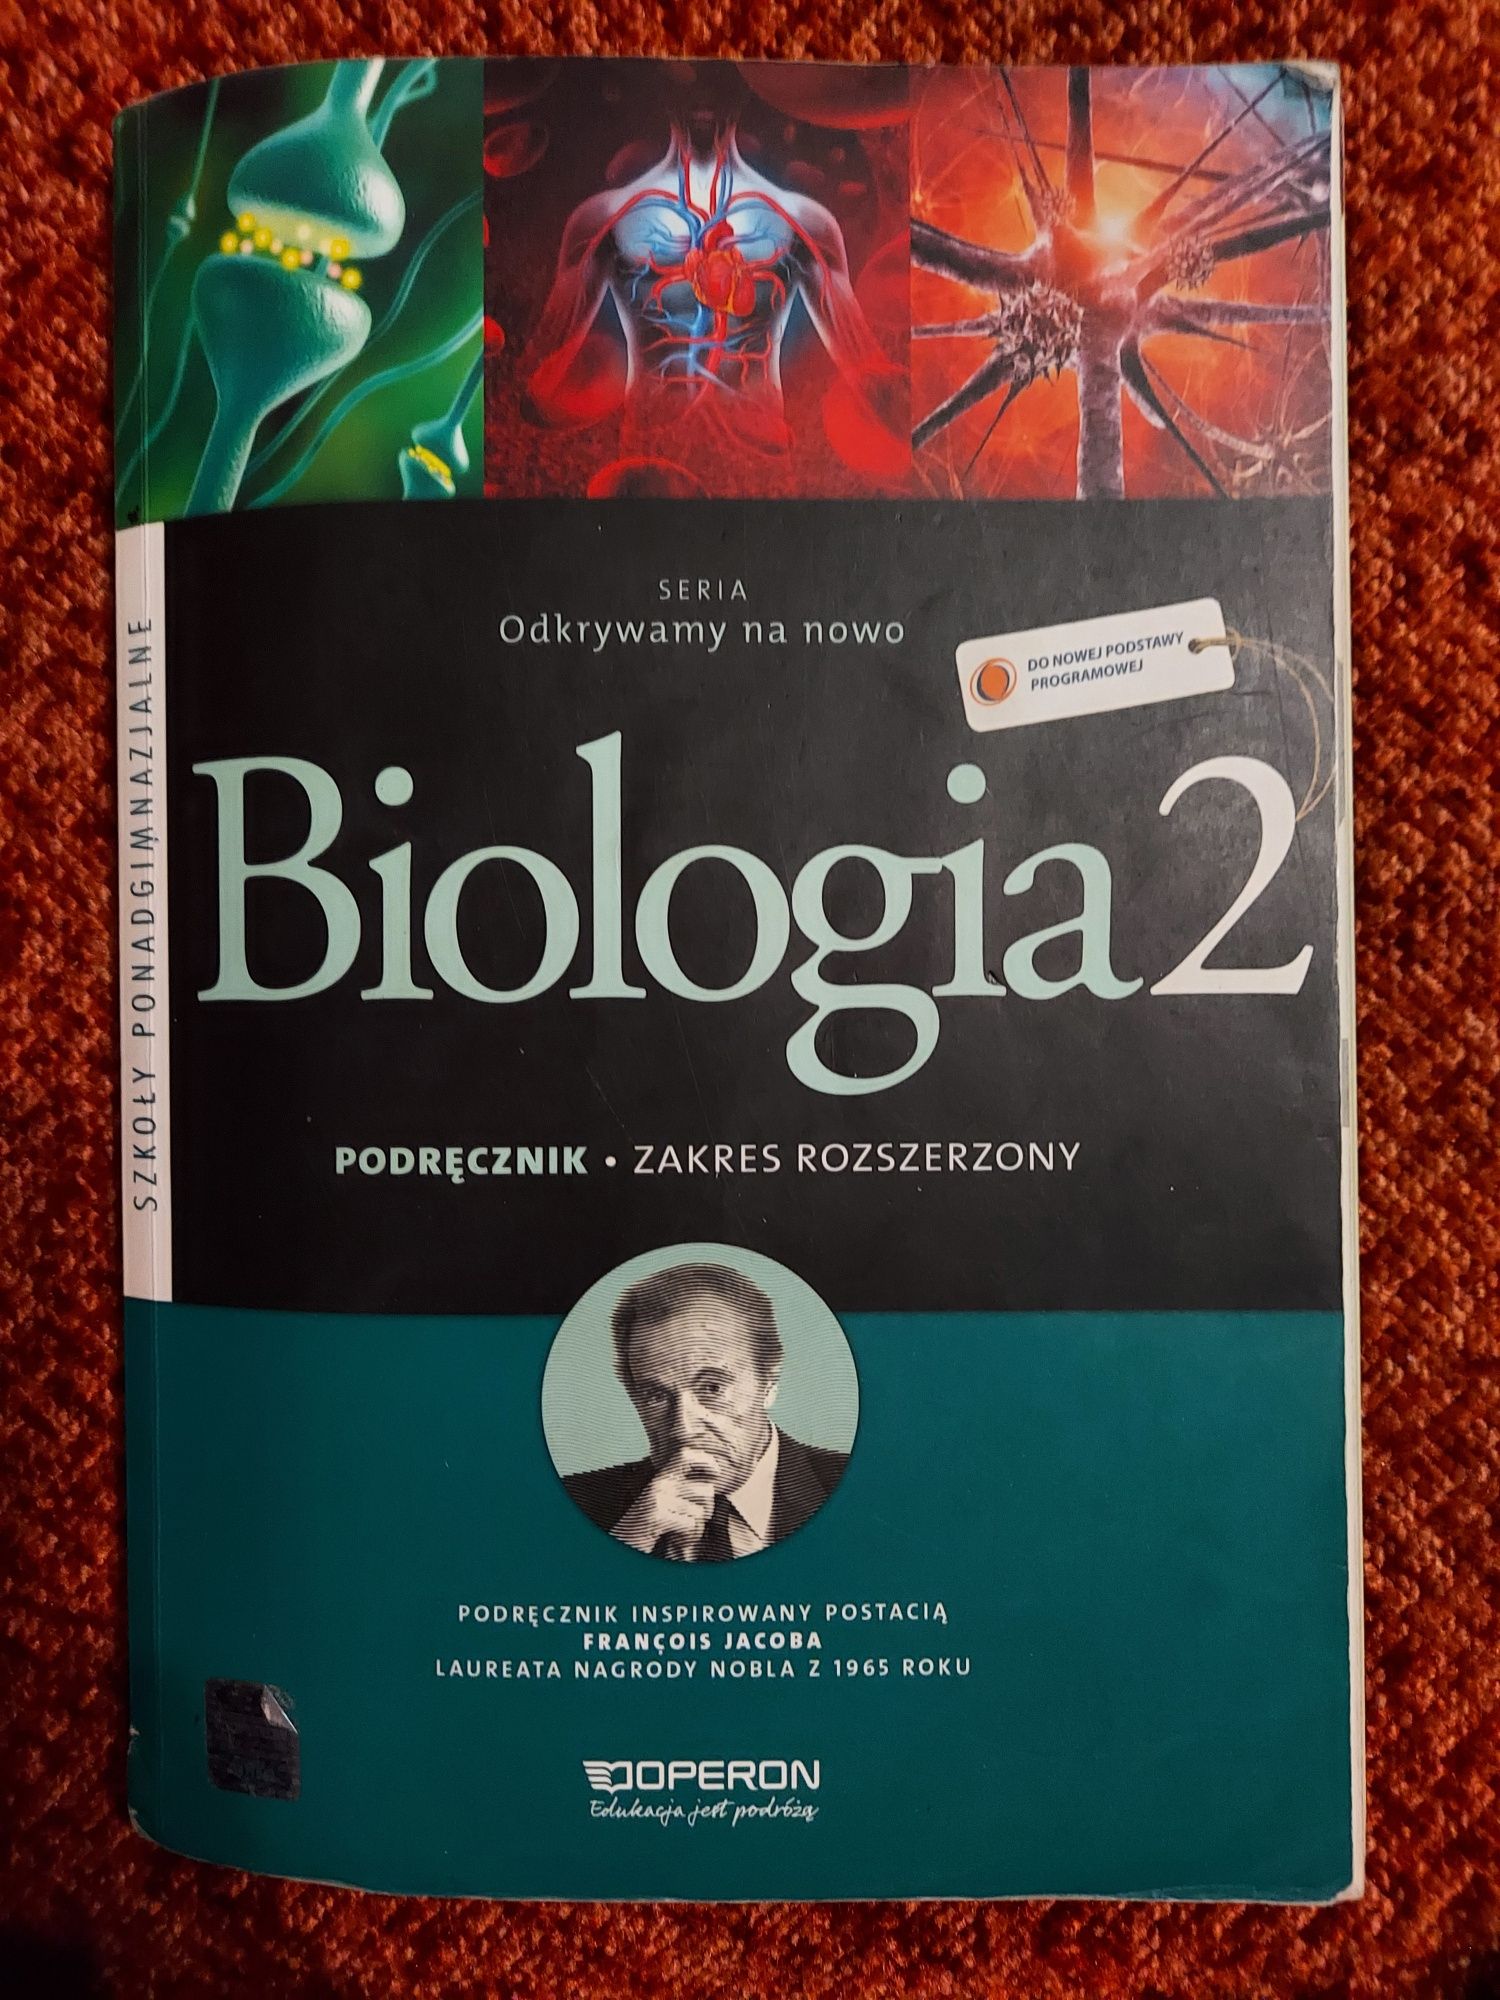 Podręcznik Biologia 2. Zakres rozszerzony.